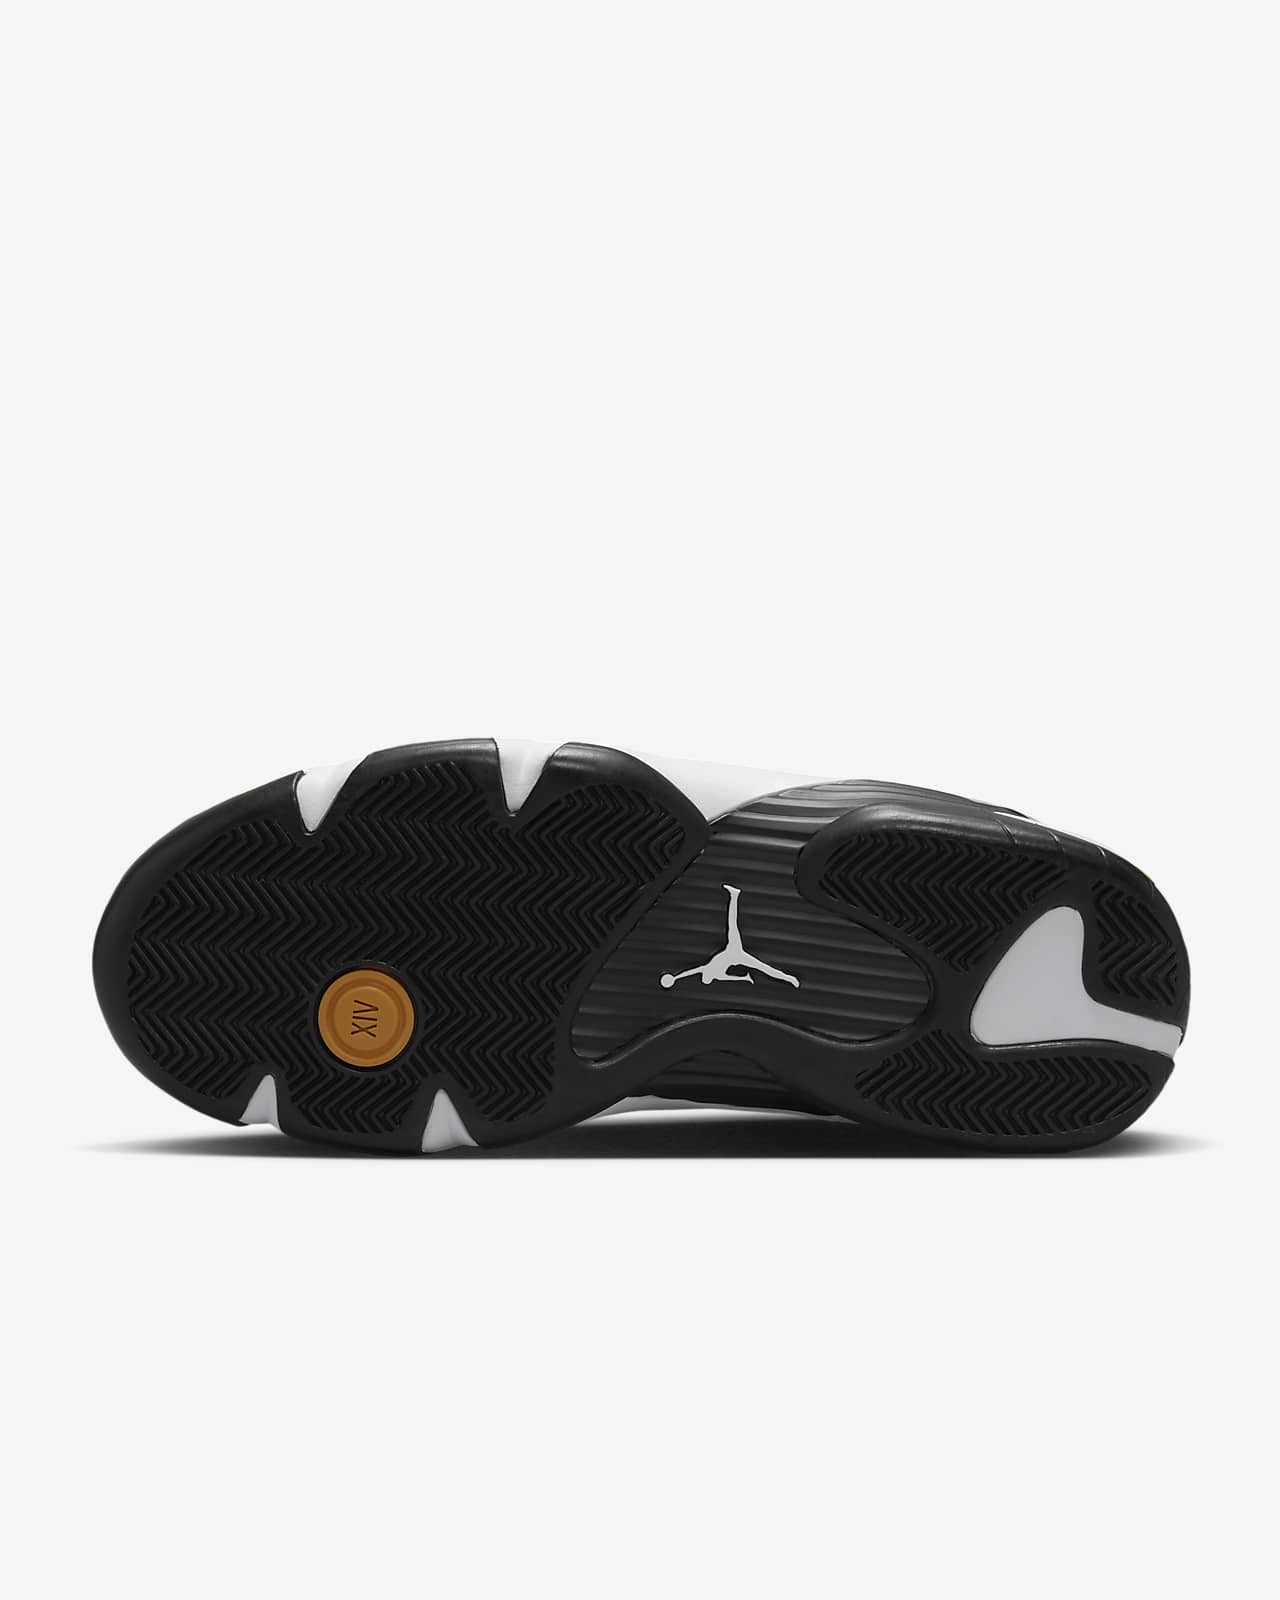 Sensible Círculo de rodamiento creencia Air Jordan 14 Retro Shoes. Nike SI